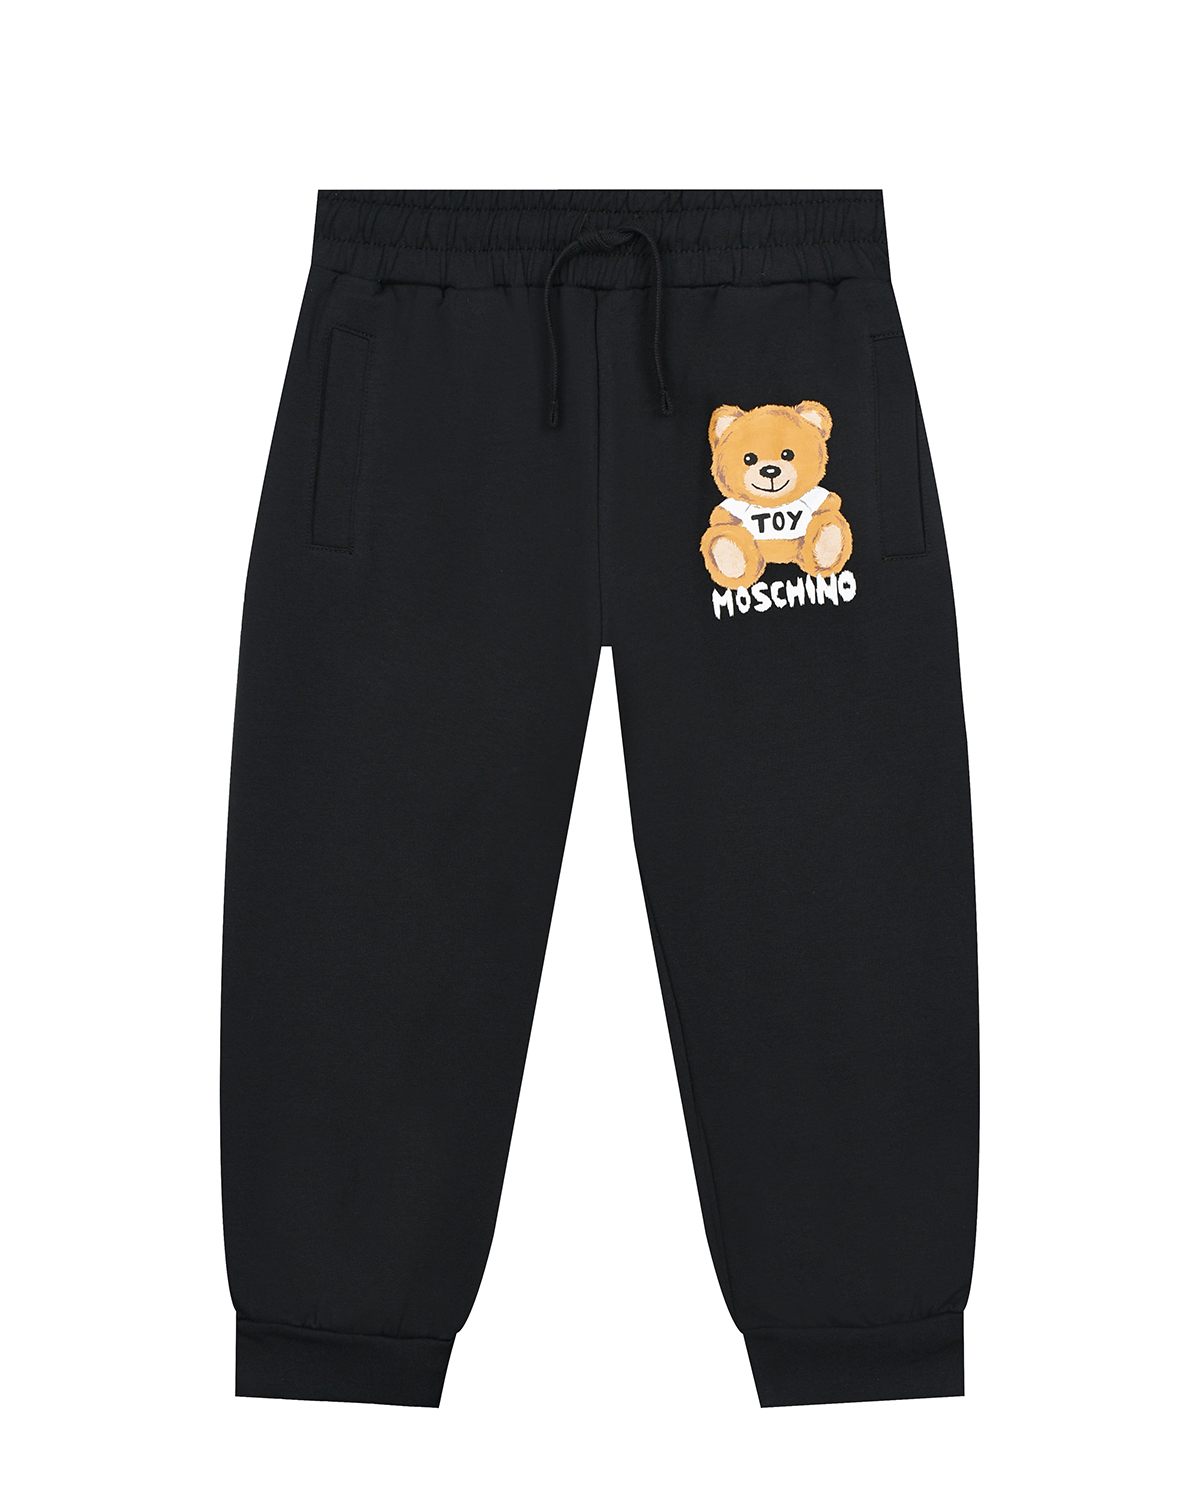 Черные спортивные брюки с принтом "медвежонок" Moschino детские, размер 104, цвет черный - фото 1